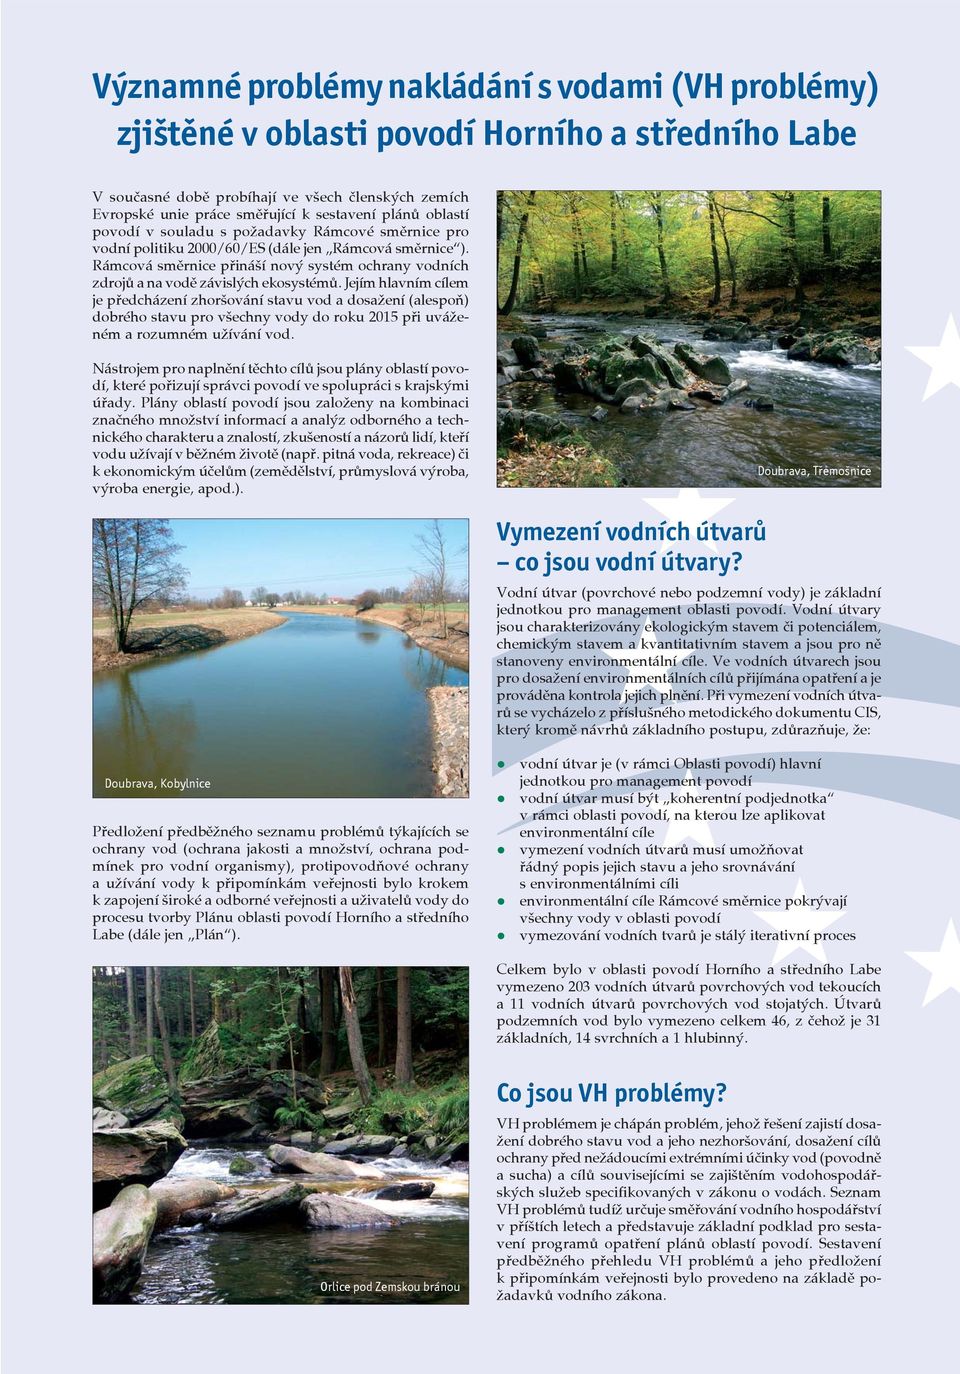 Rámcová směrnice přináší nový systém ochrany vodních zdrojů a na vodě závislých ekosystémů.